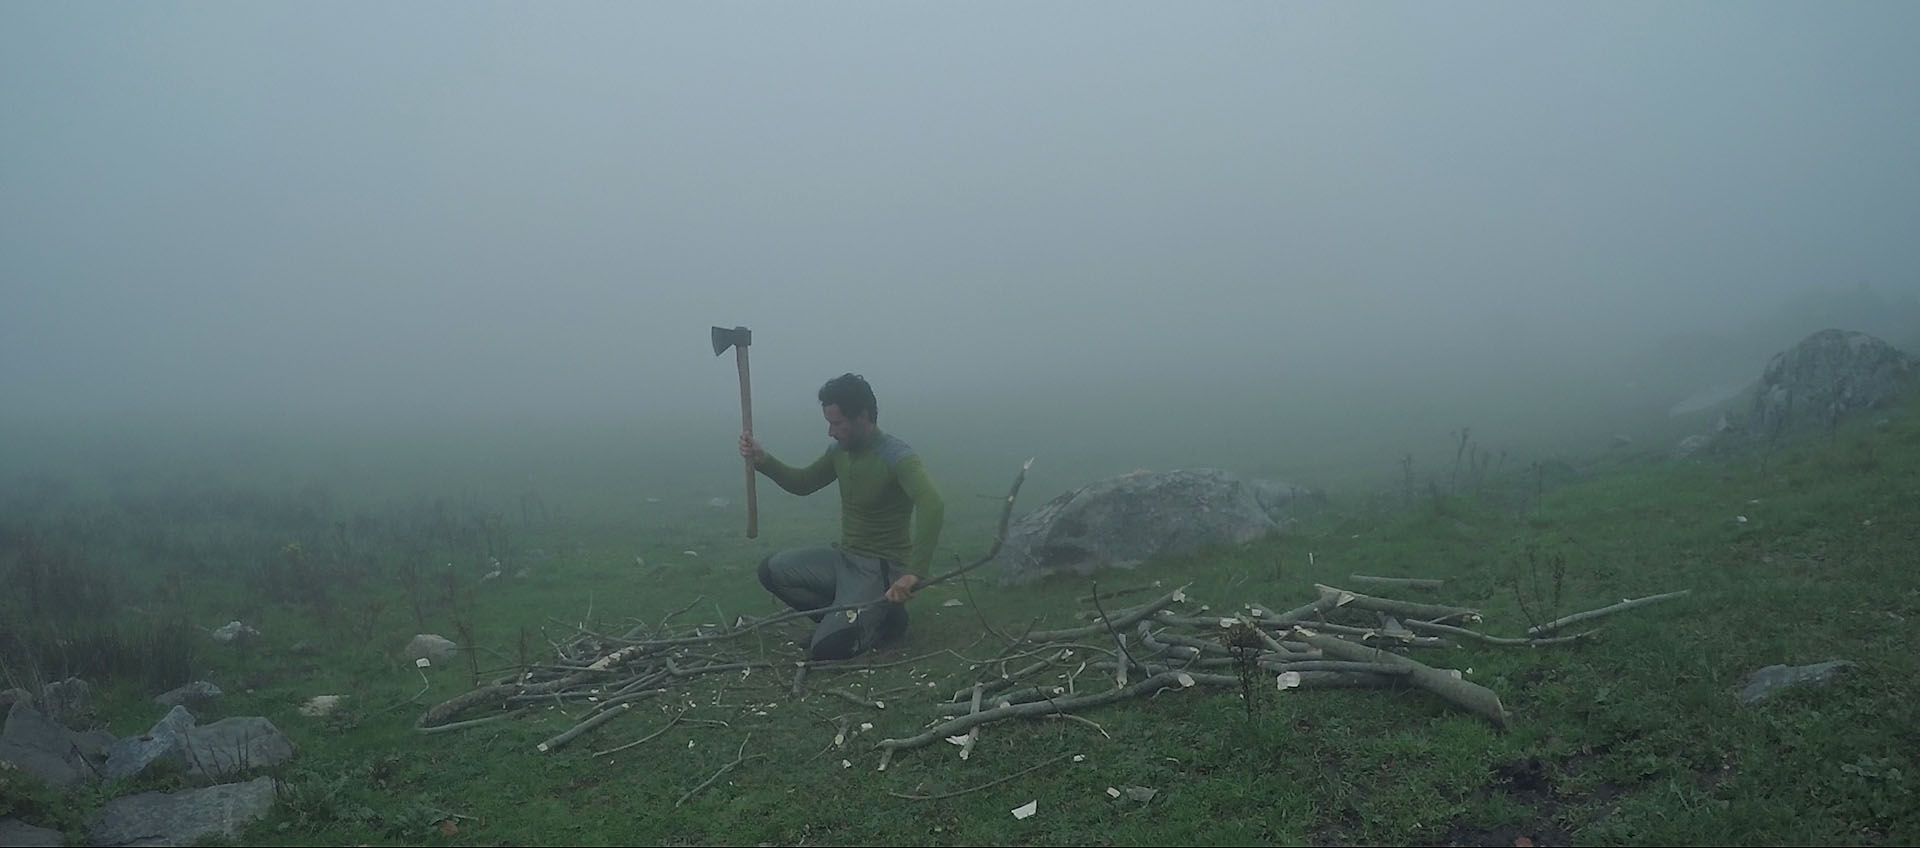 Se encierra 100 días en una cabaña asturiana y lo registra en este documental